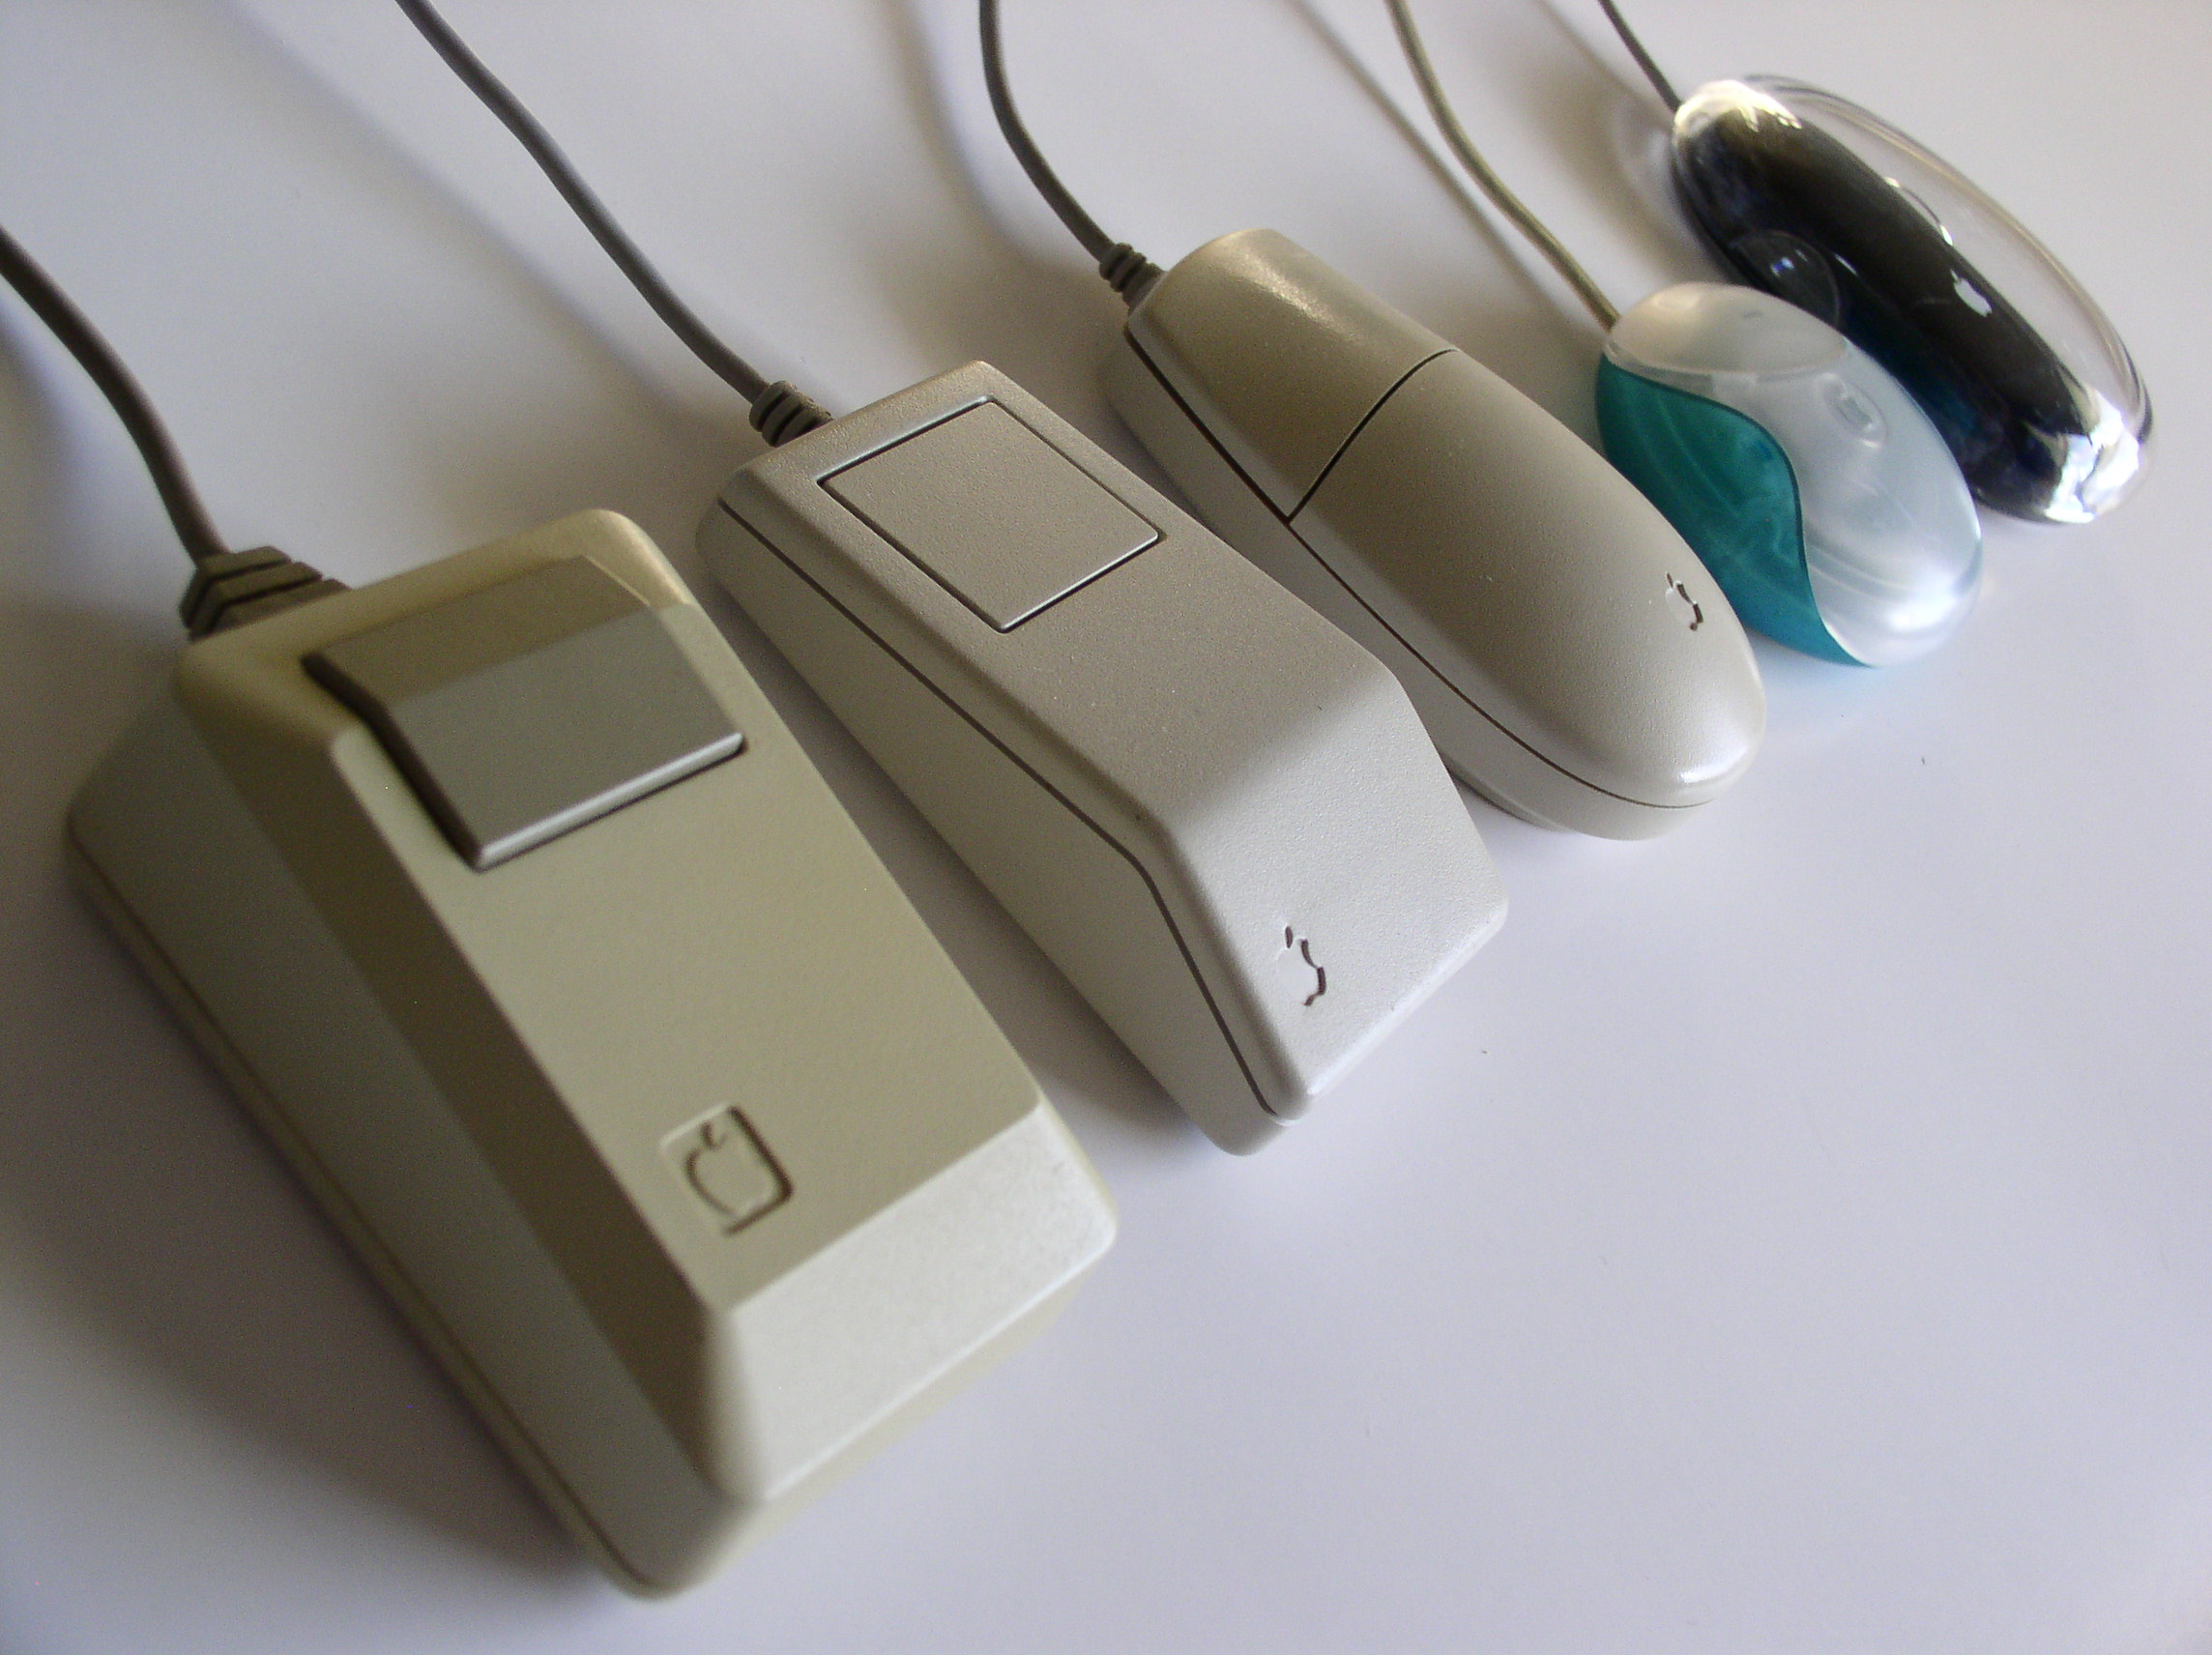 Historia de la tecnología: el Mouse